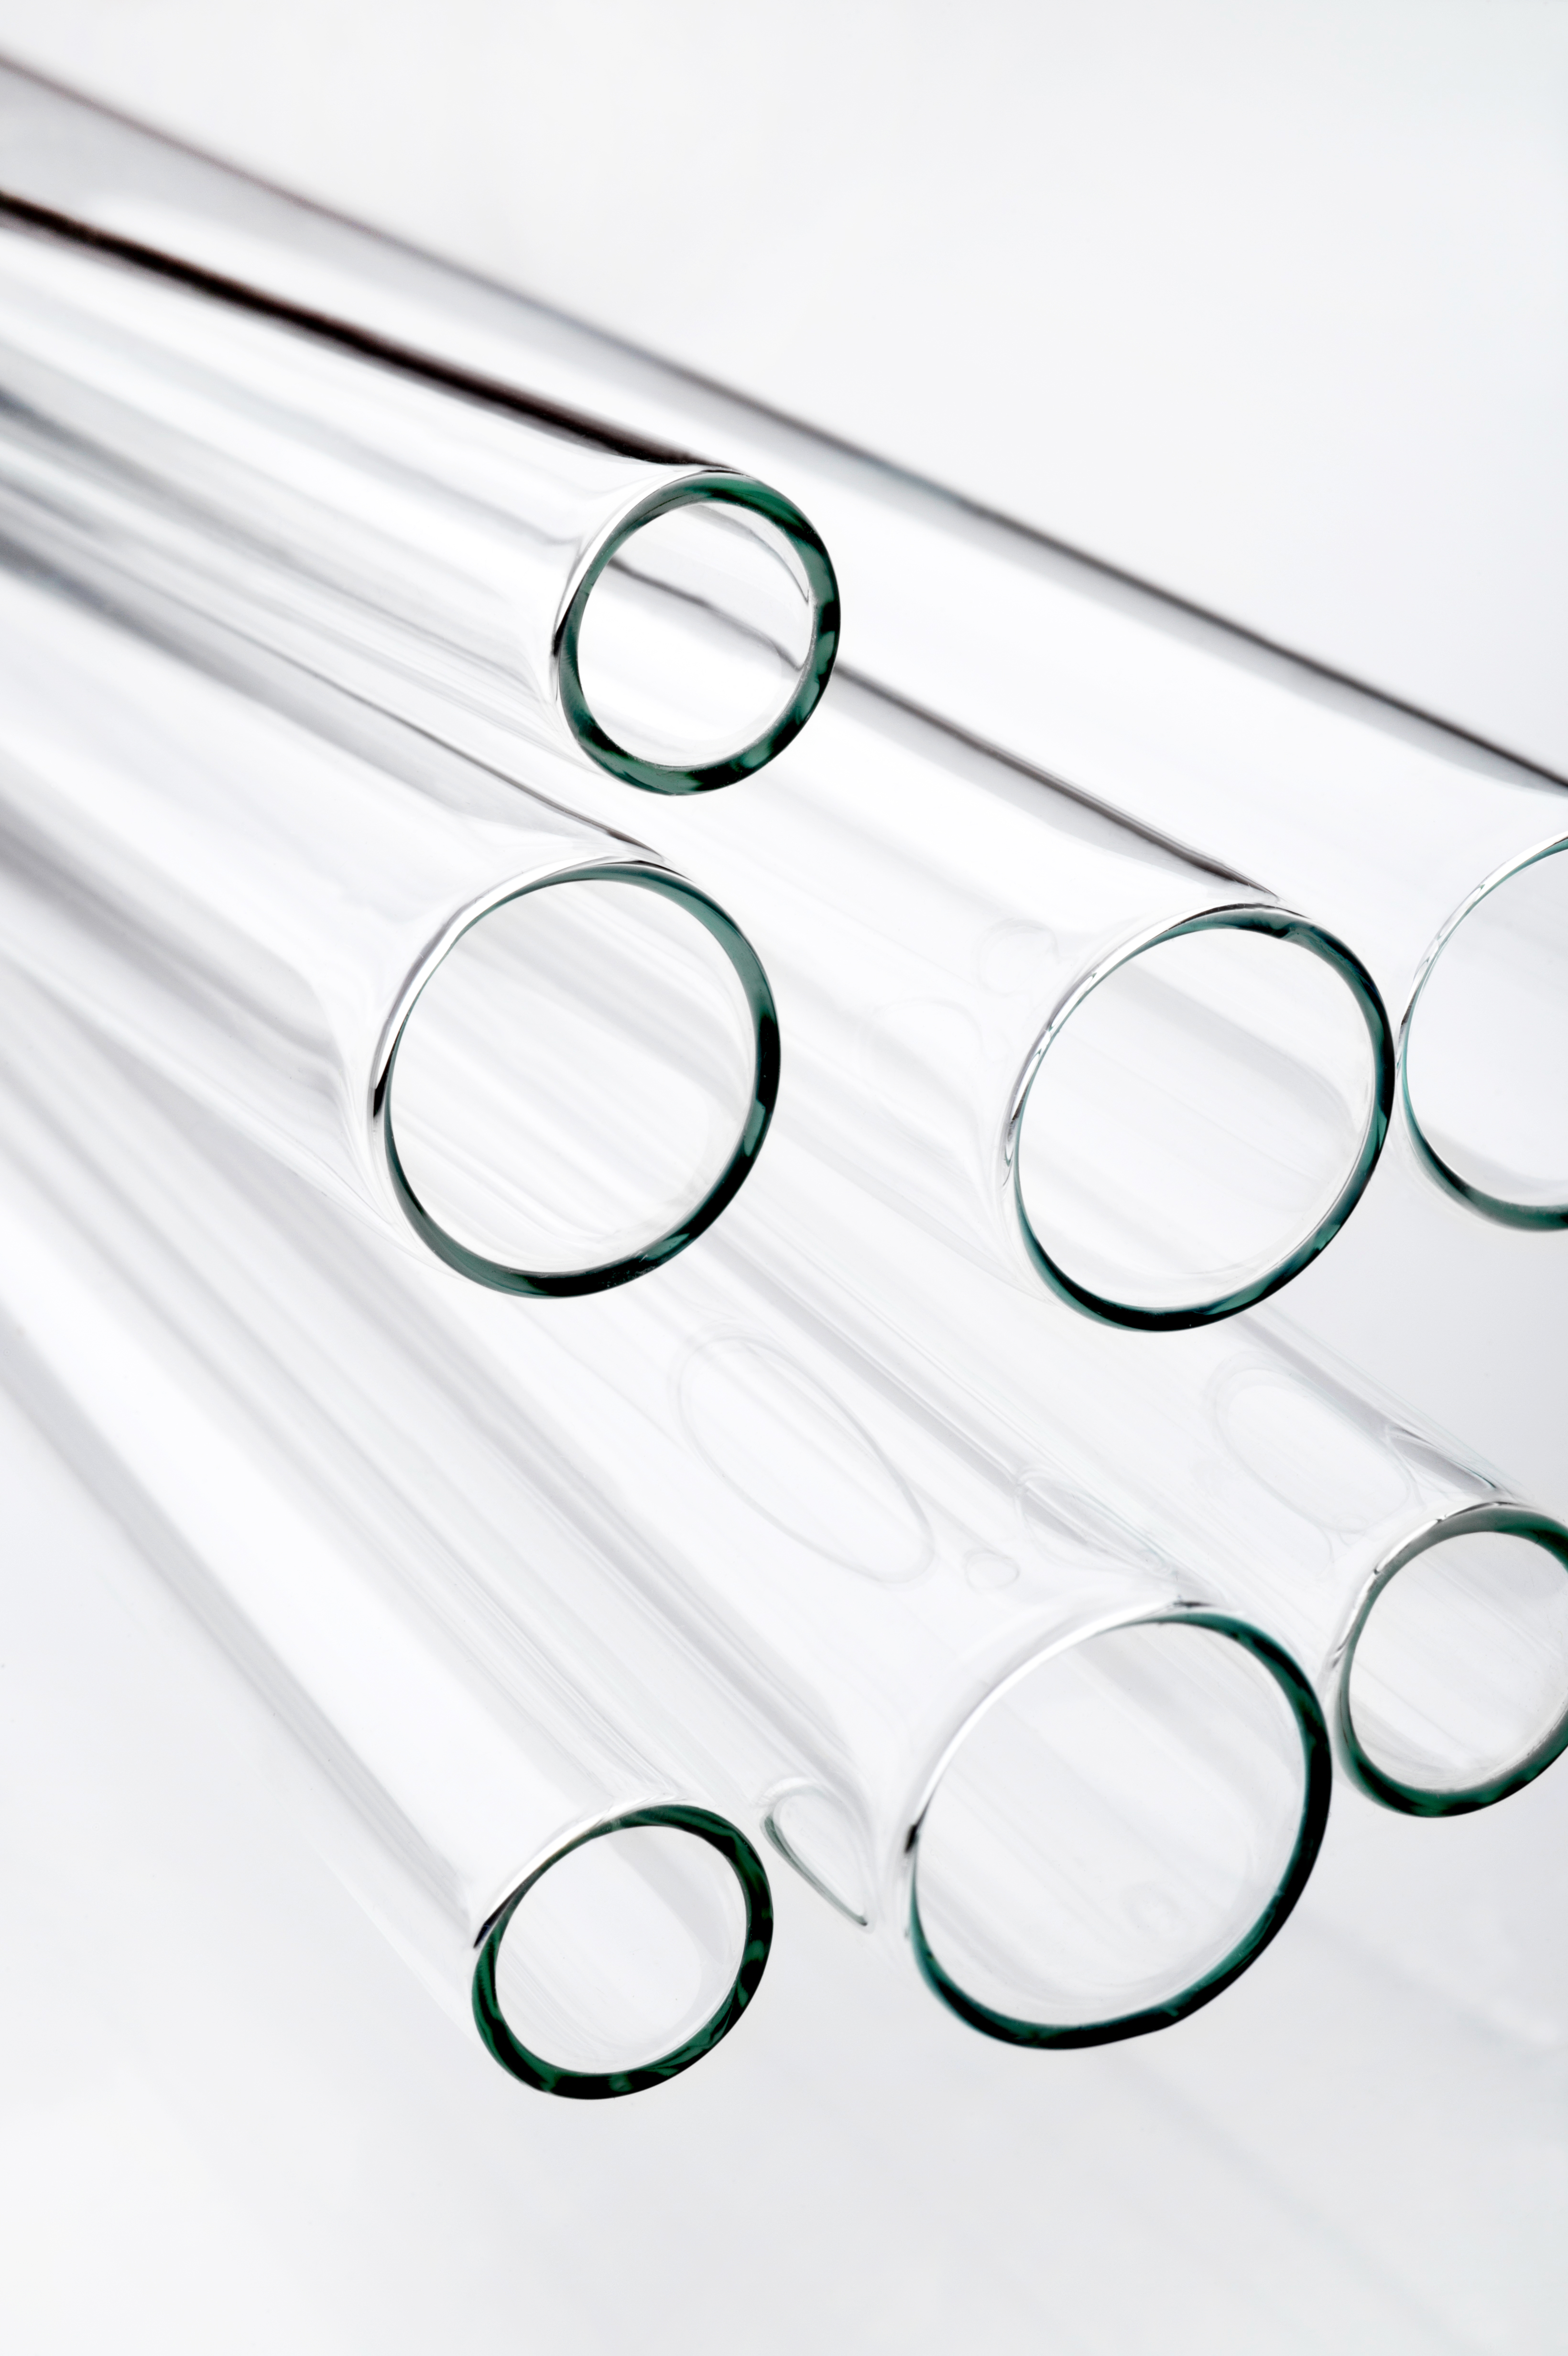 Corning® 33 Clear Borosilicate Glass Tubing